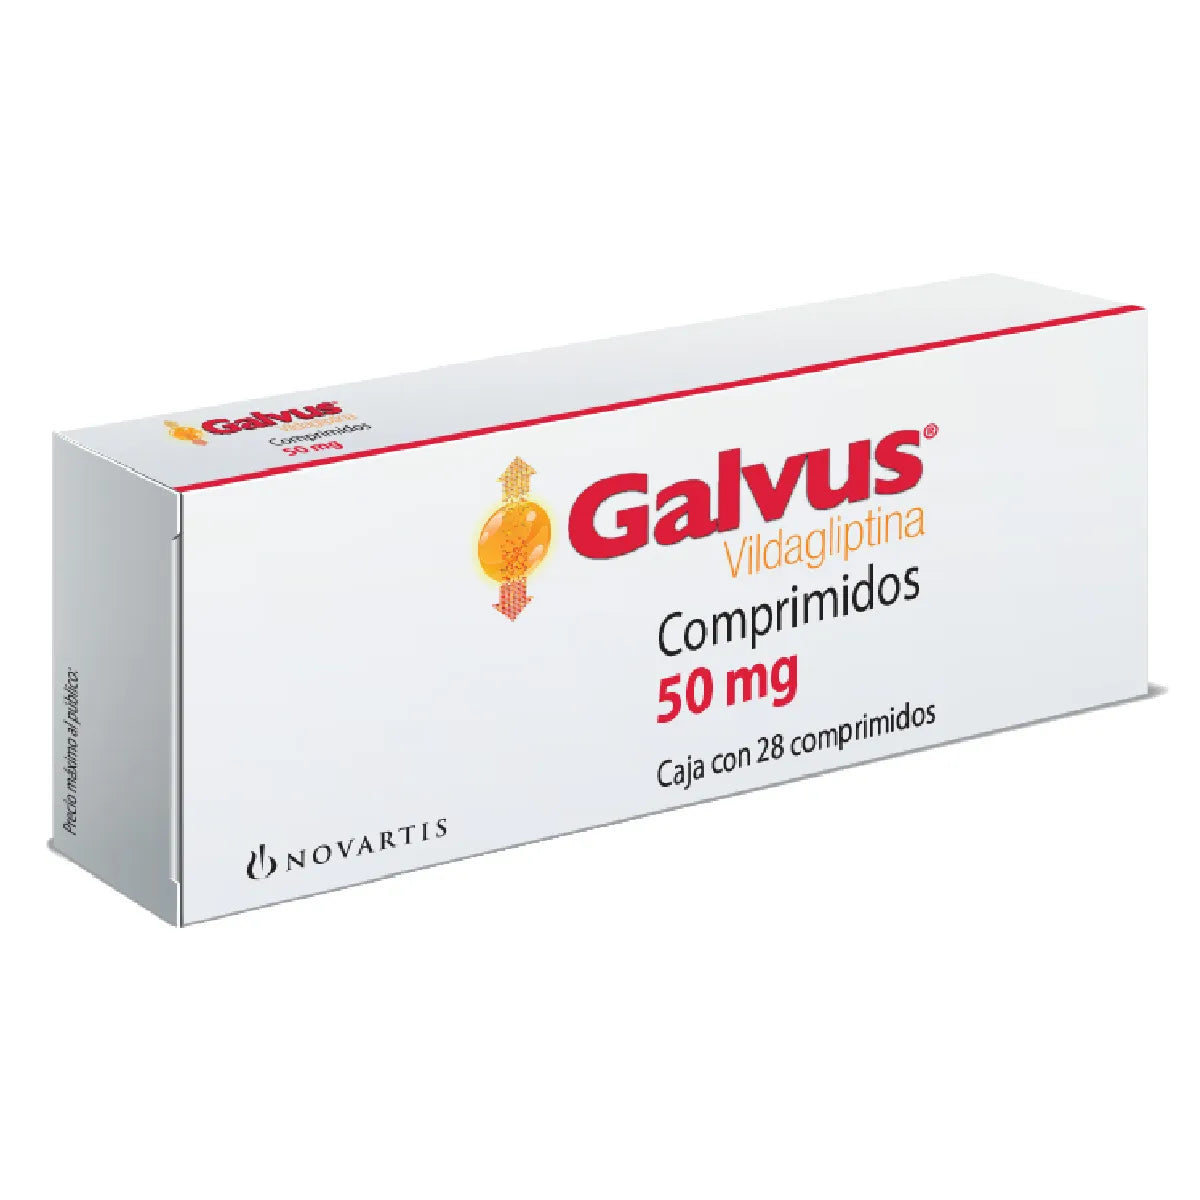 Galvus Vidagliptina 50 mg con 28 comprimidos